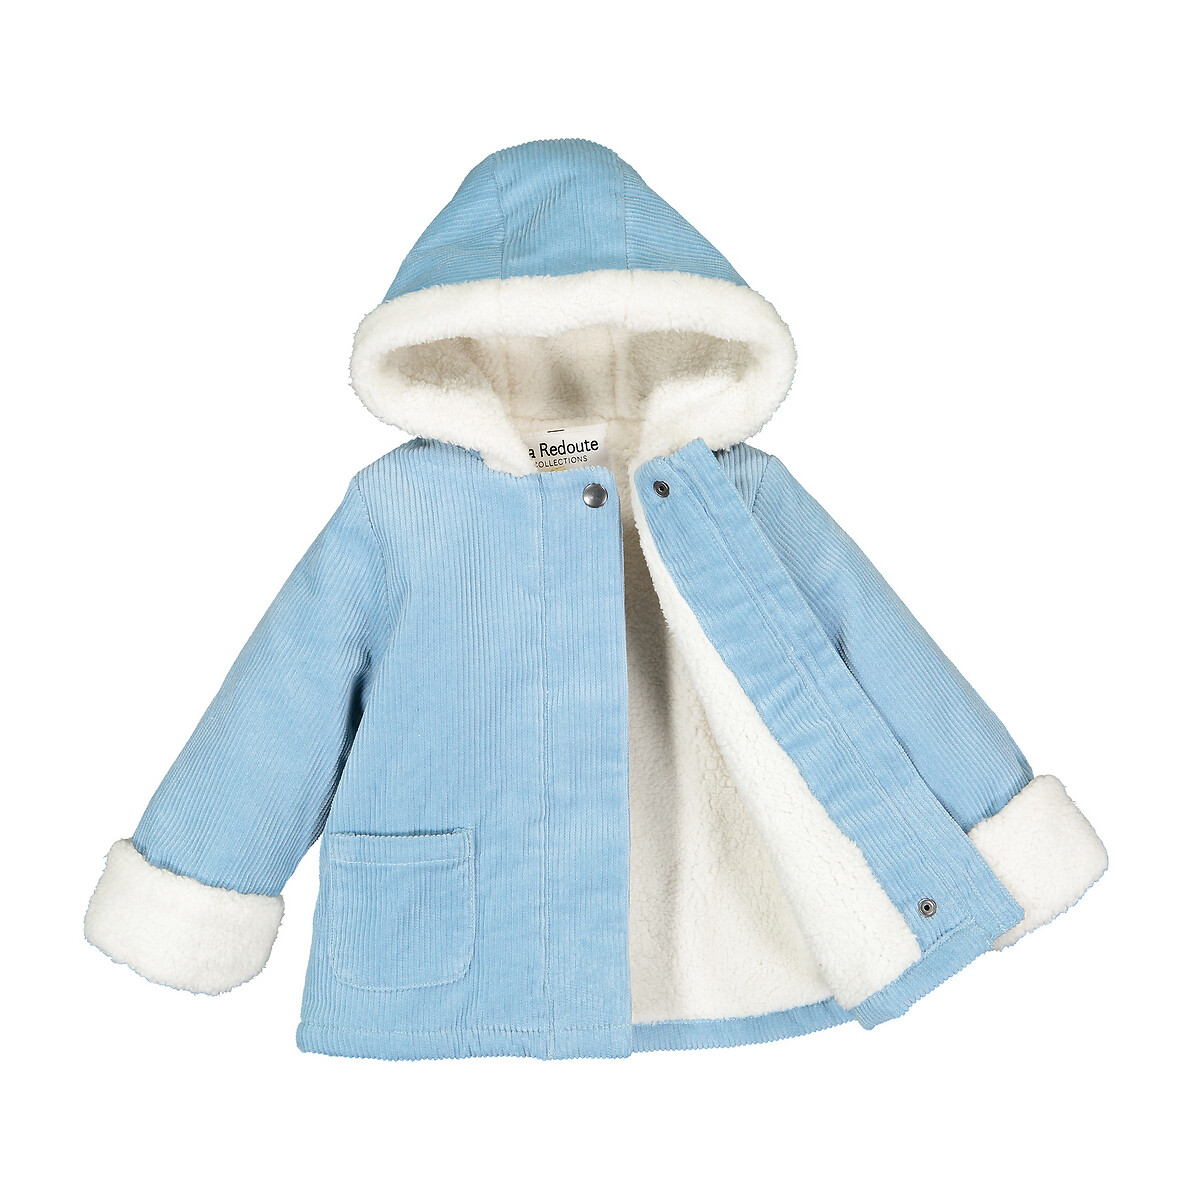 Пальто La Redoute Утепленное из велюра с капюшоном 3 мес-4 года 4 года - 102 см синий, размер 4 года - 102 см - фото 3